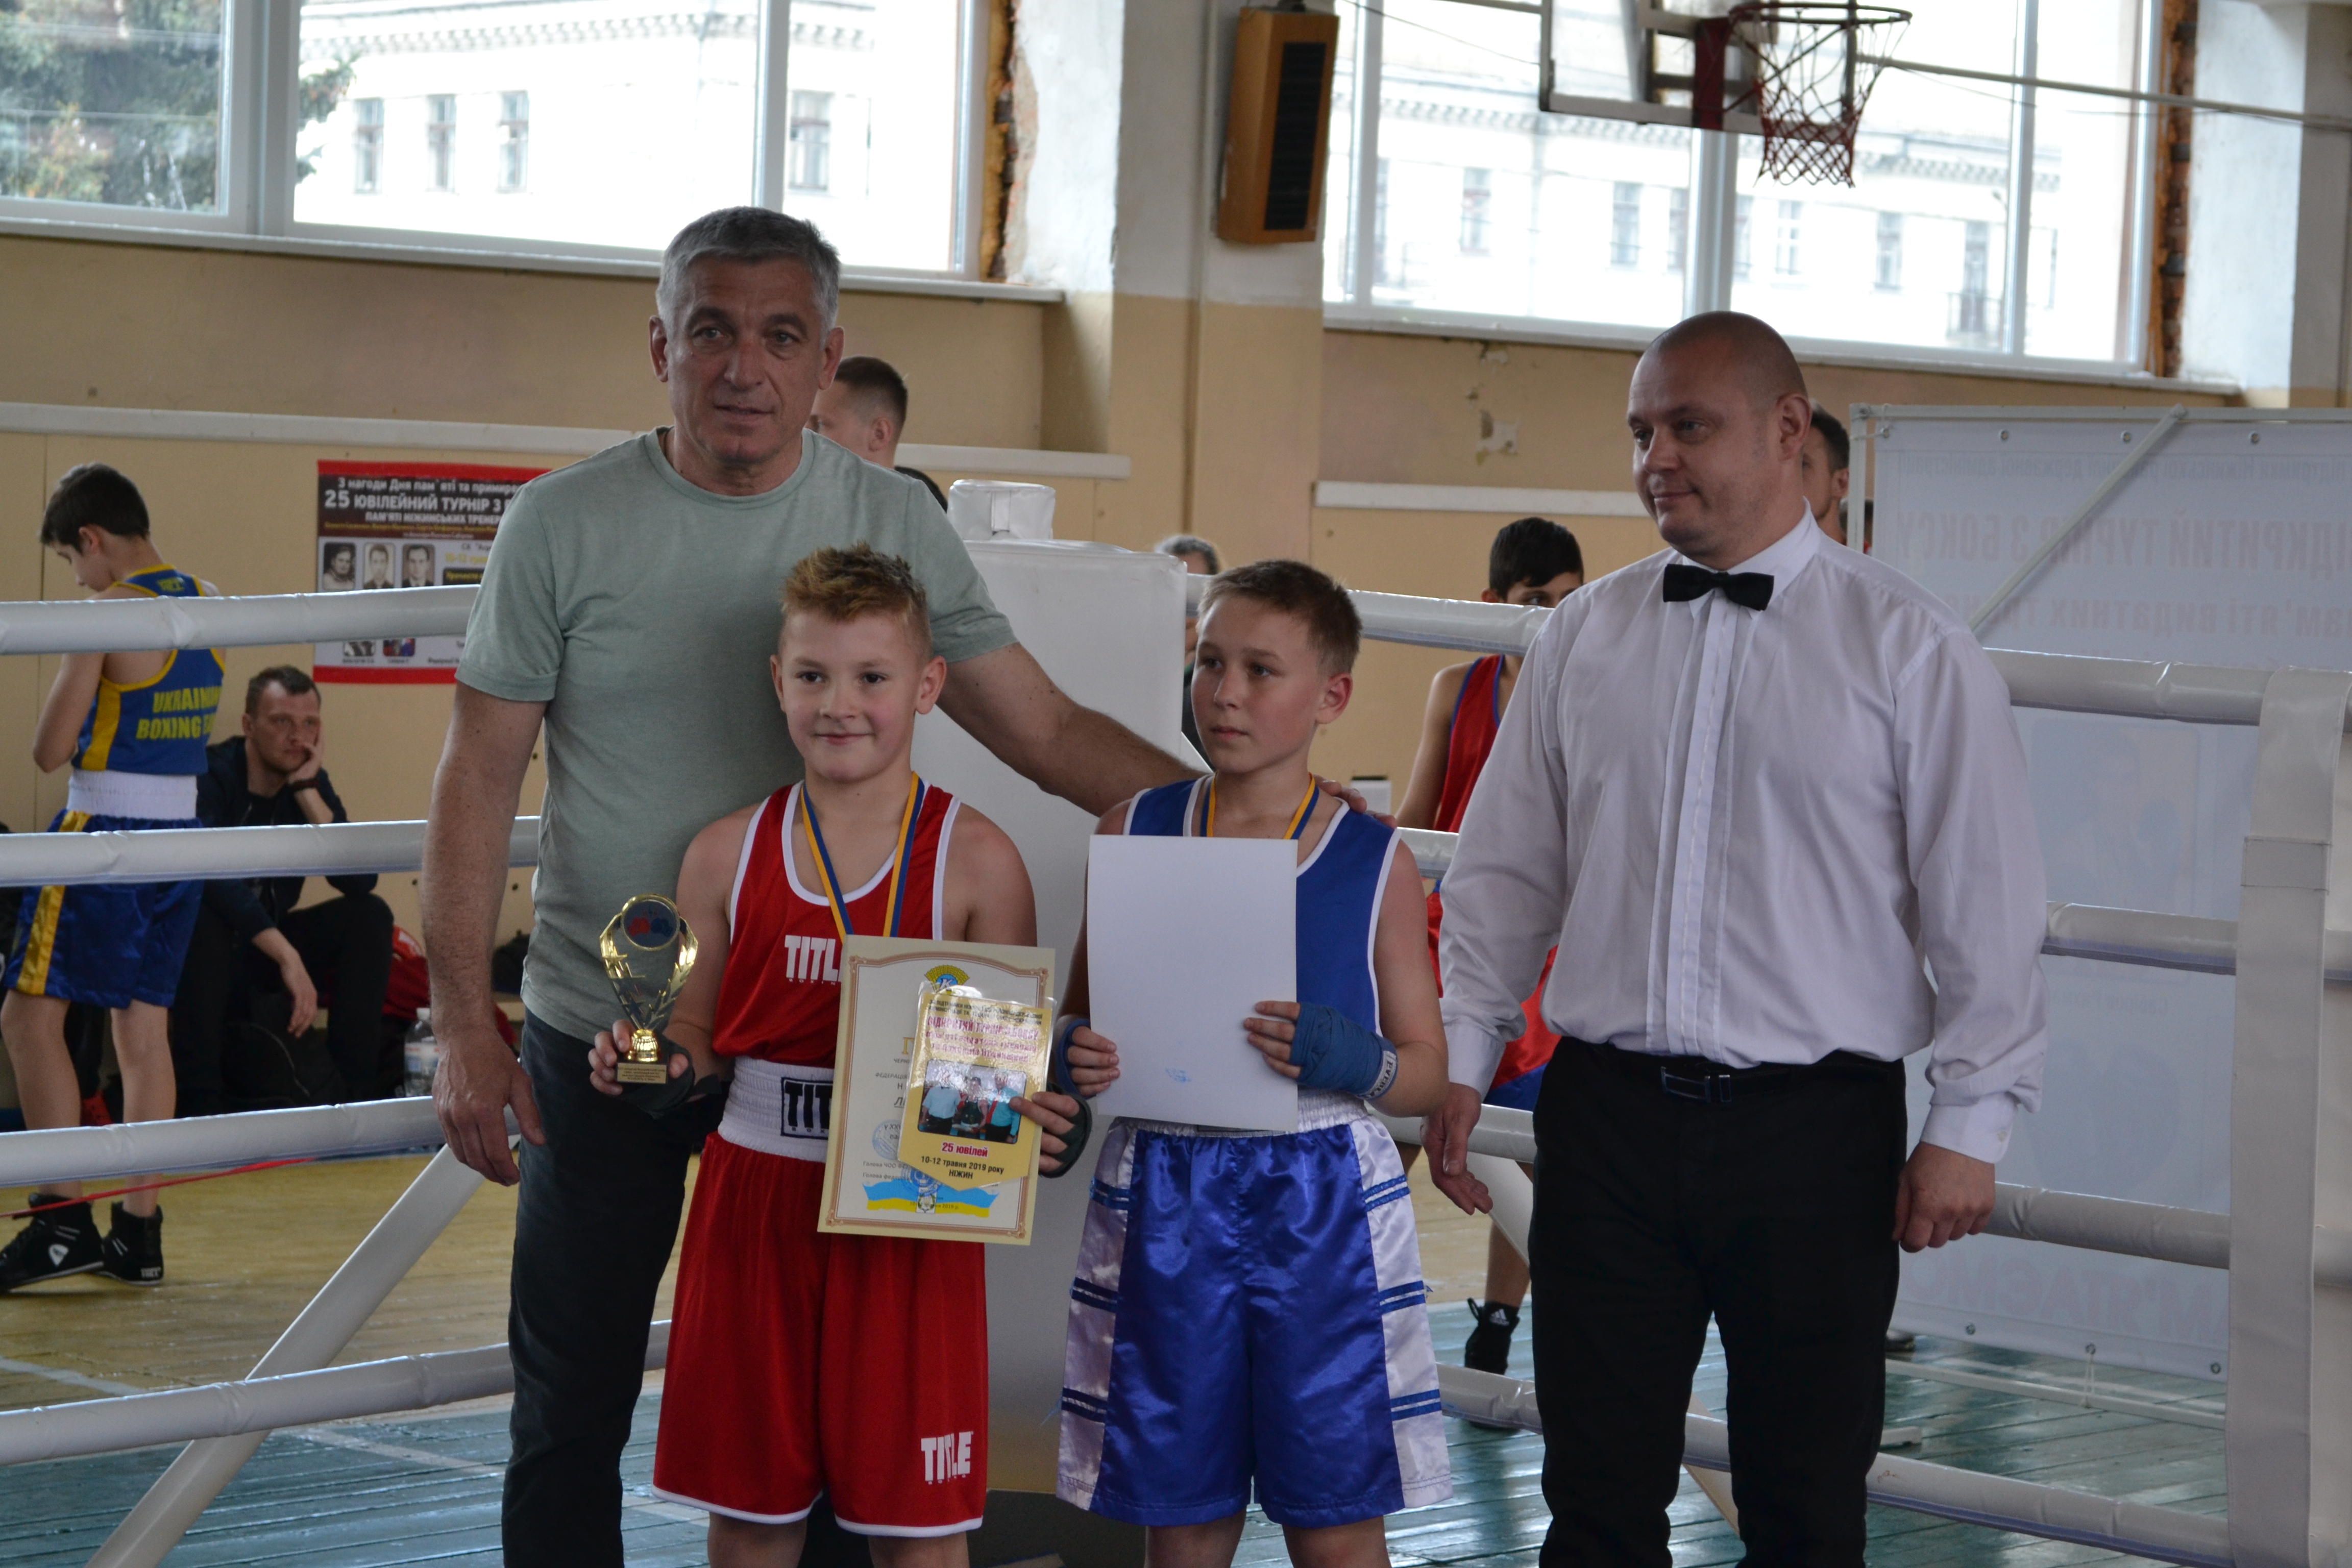 Всеукраїнський турнір, бокс, результати